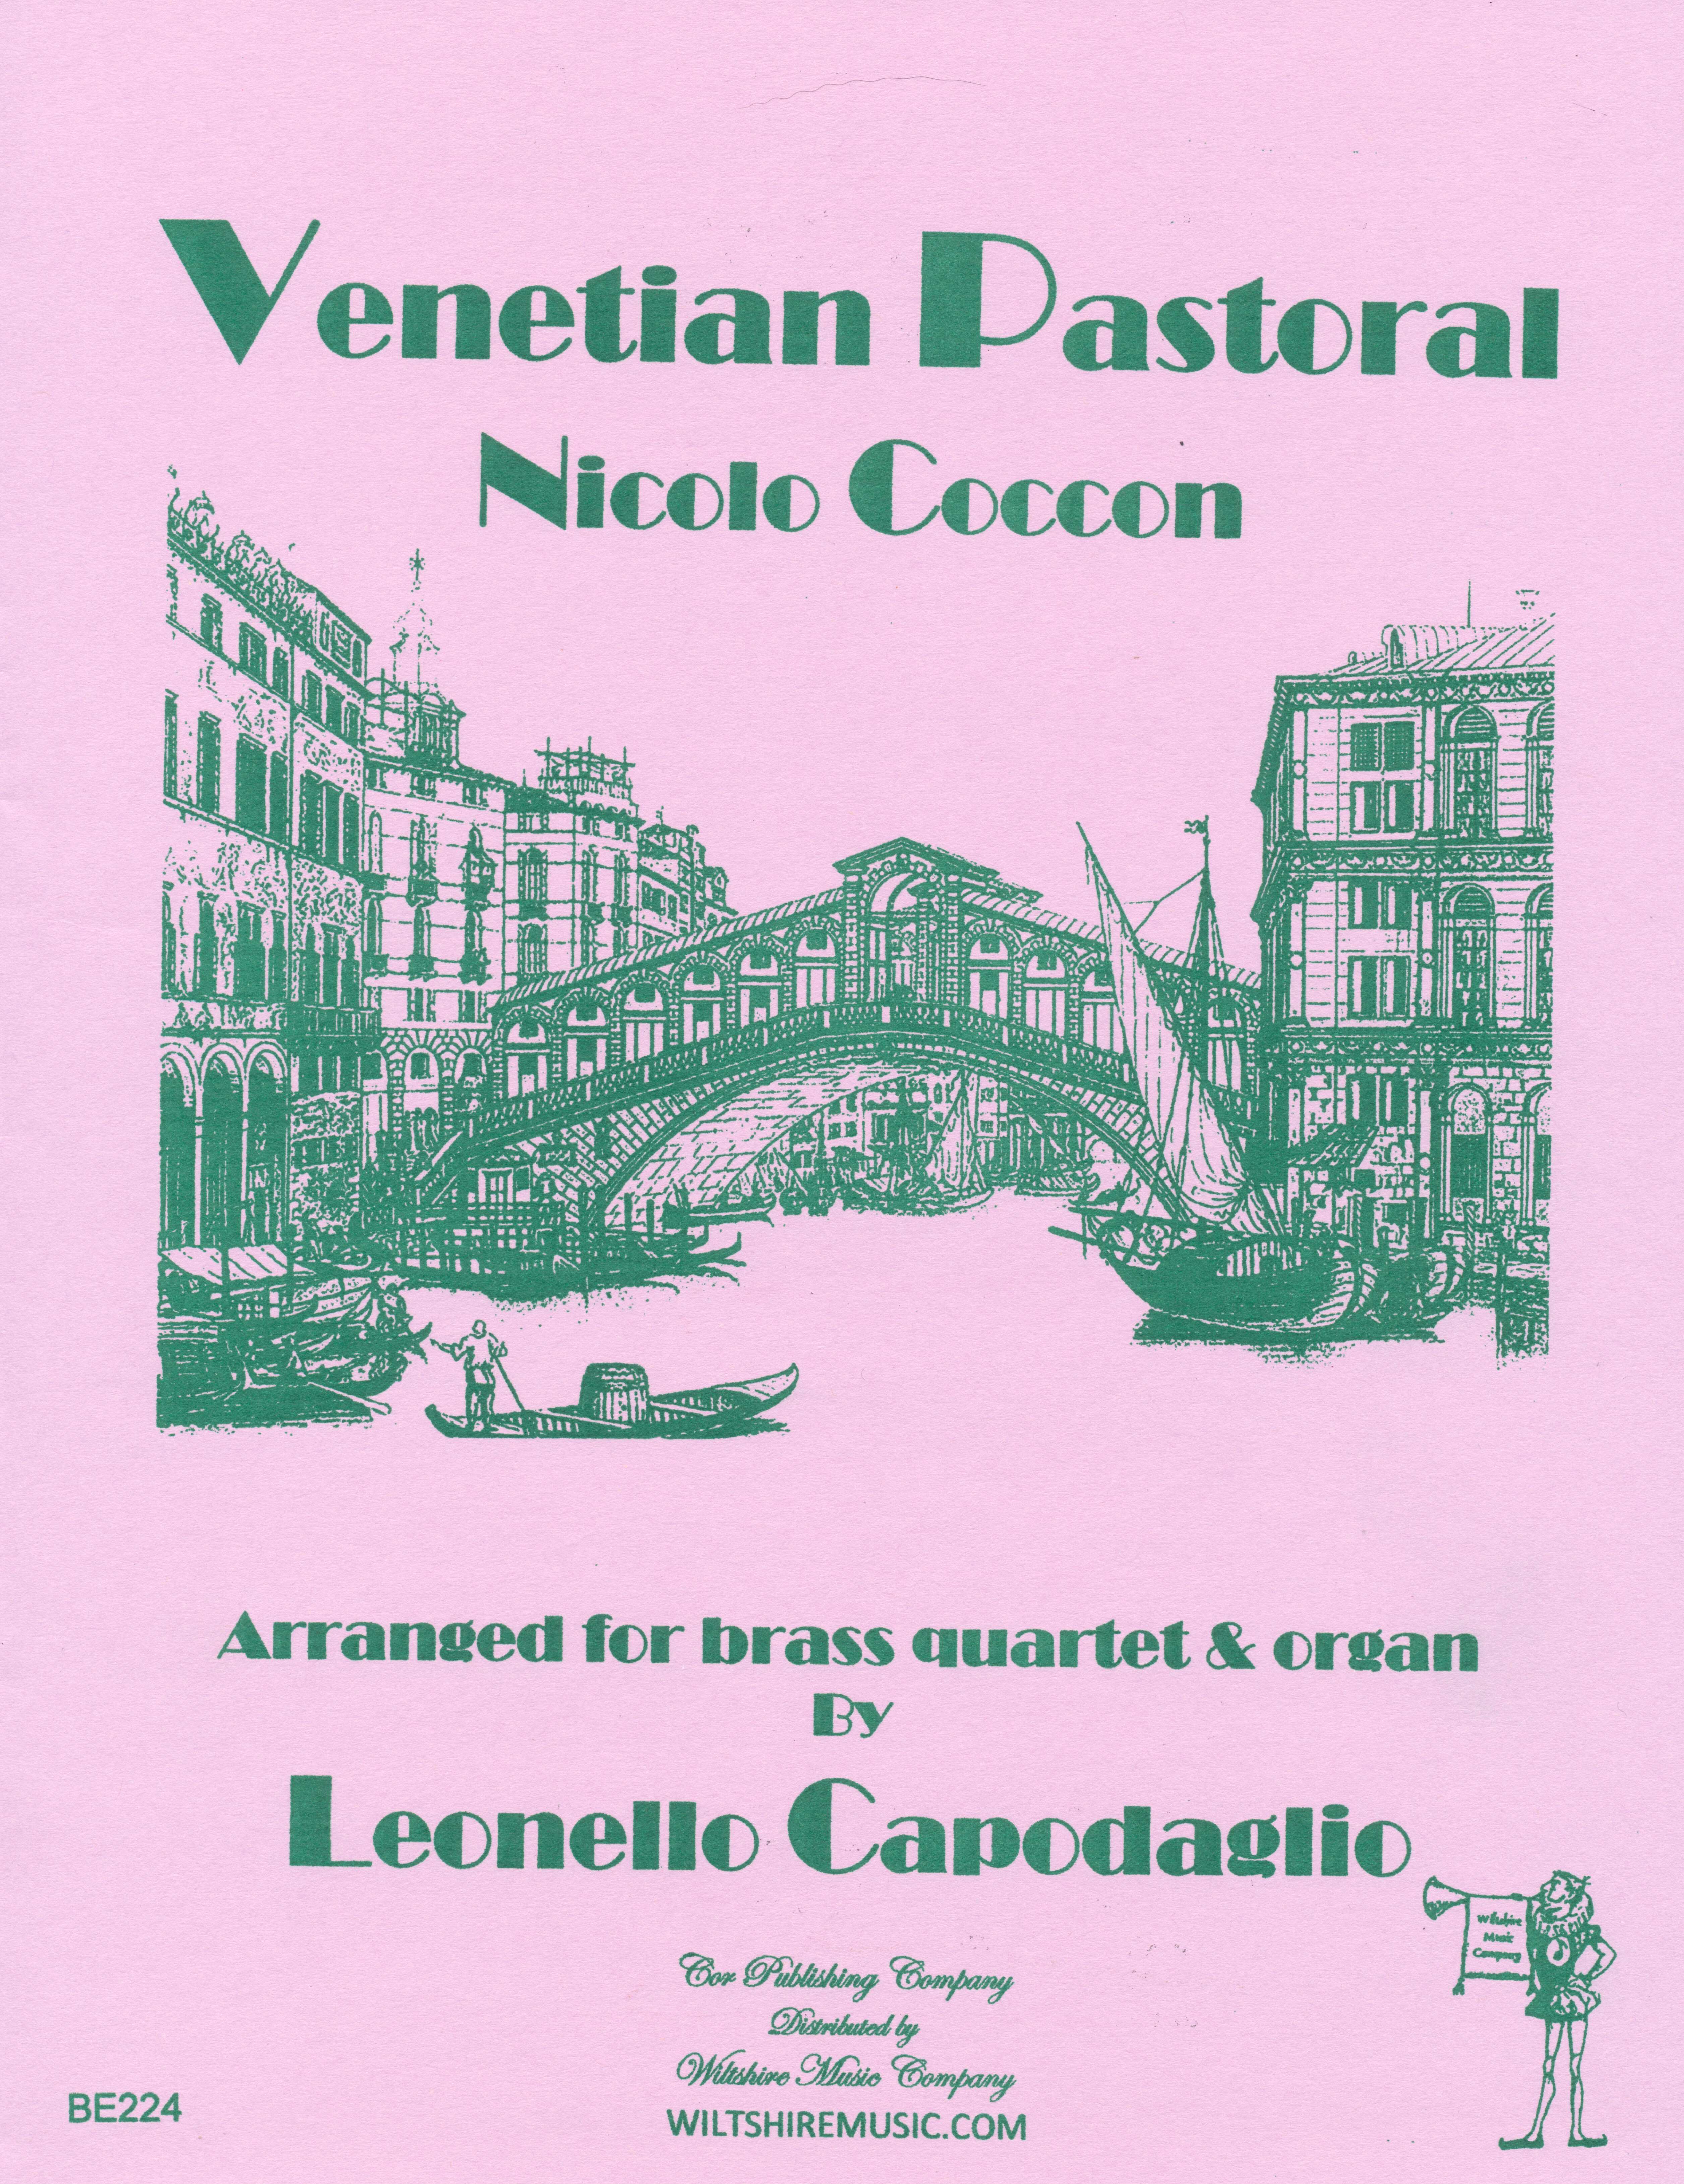 Venetial Pastoral, Niccolo Coccon, arr. L. Capodaglio, brass qua